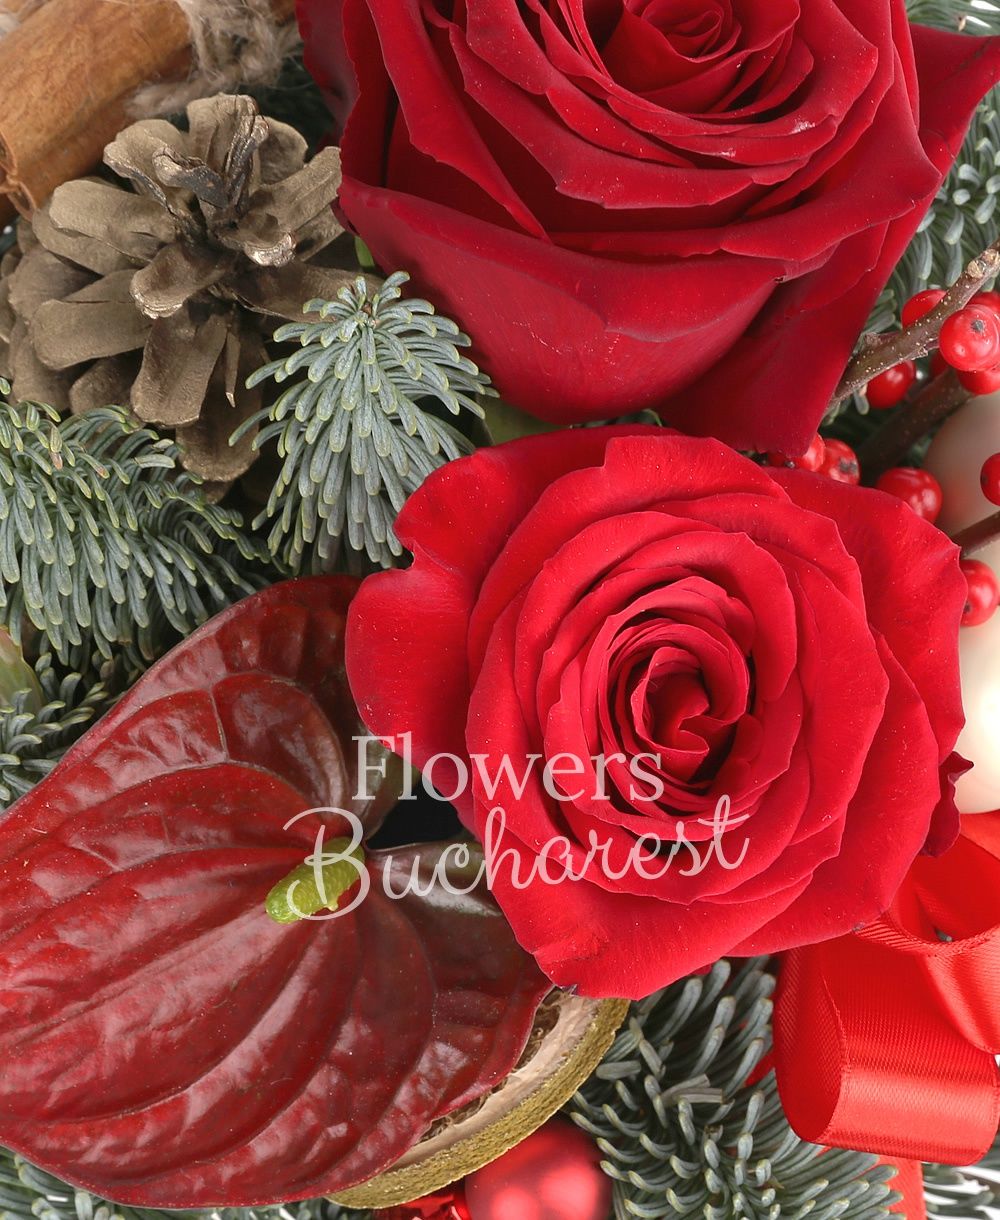 3 red roses, 2 ilex, 2 anthurium, ornaments, vase